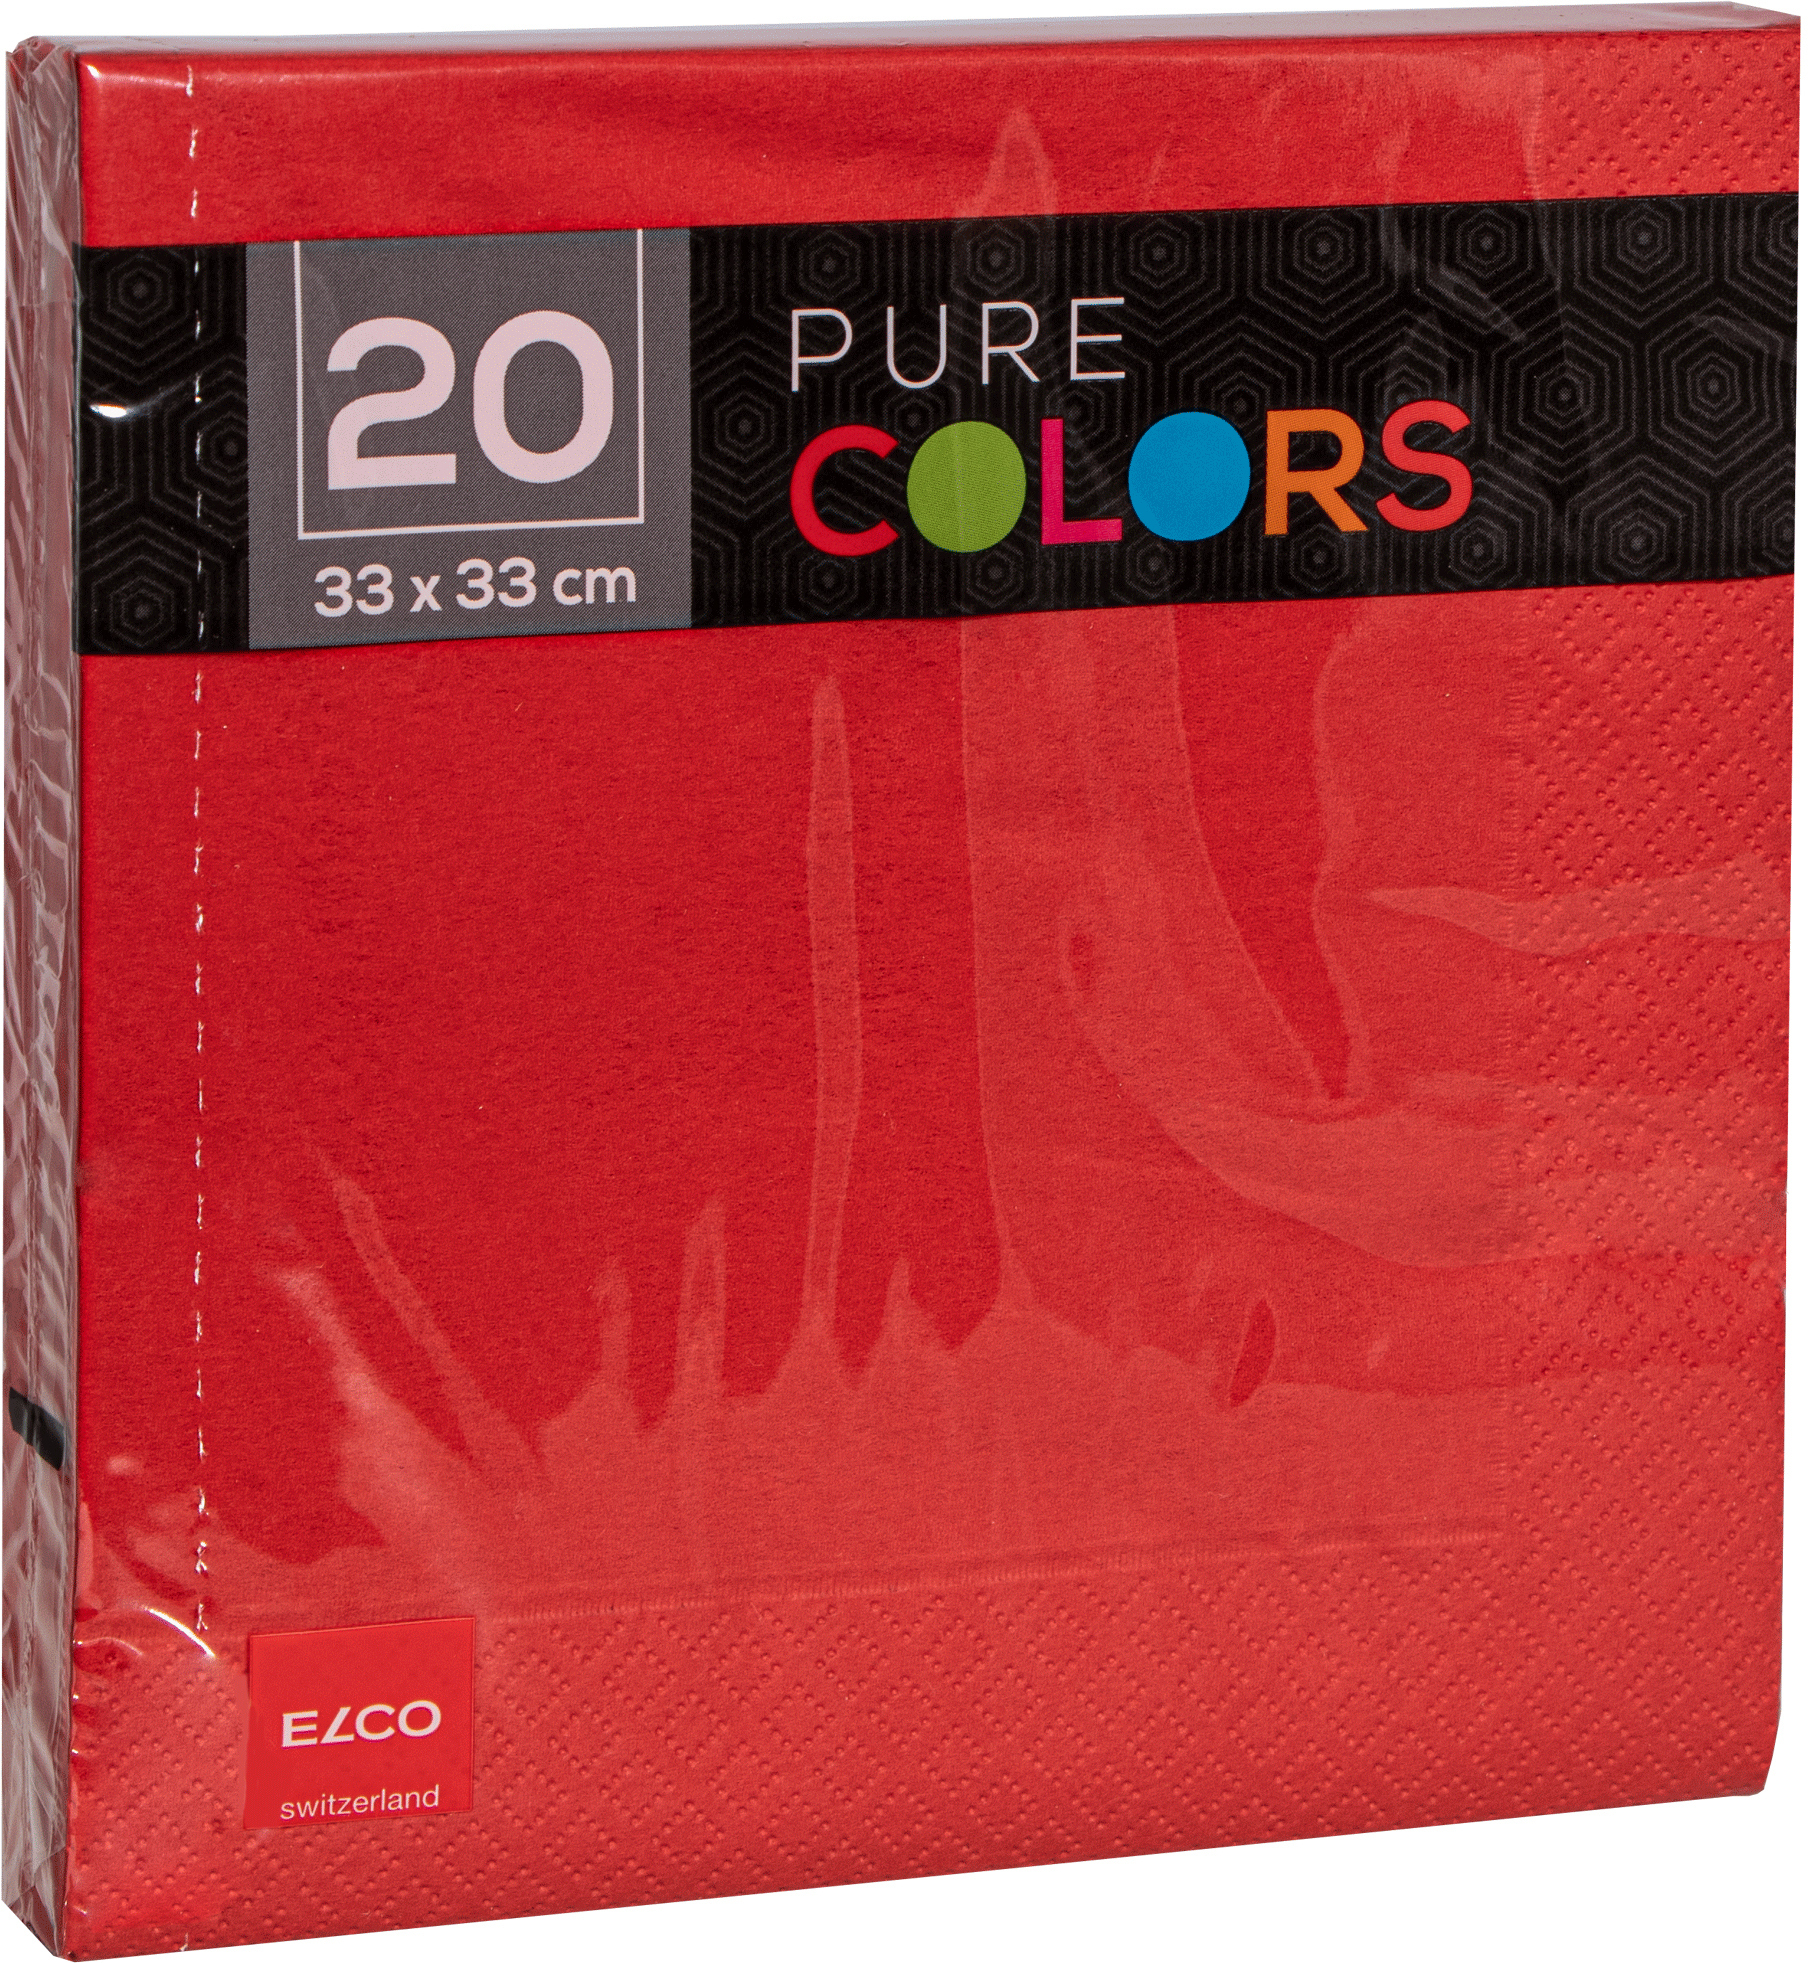 ELCO Serviettes tissue 33x33cm PC334020-020 3 plis, rouge 20pcs.